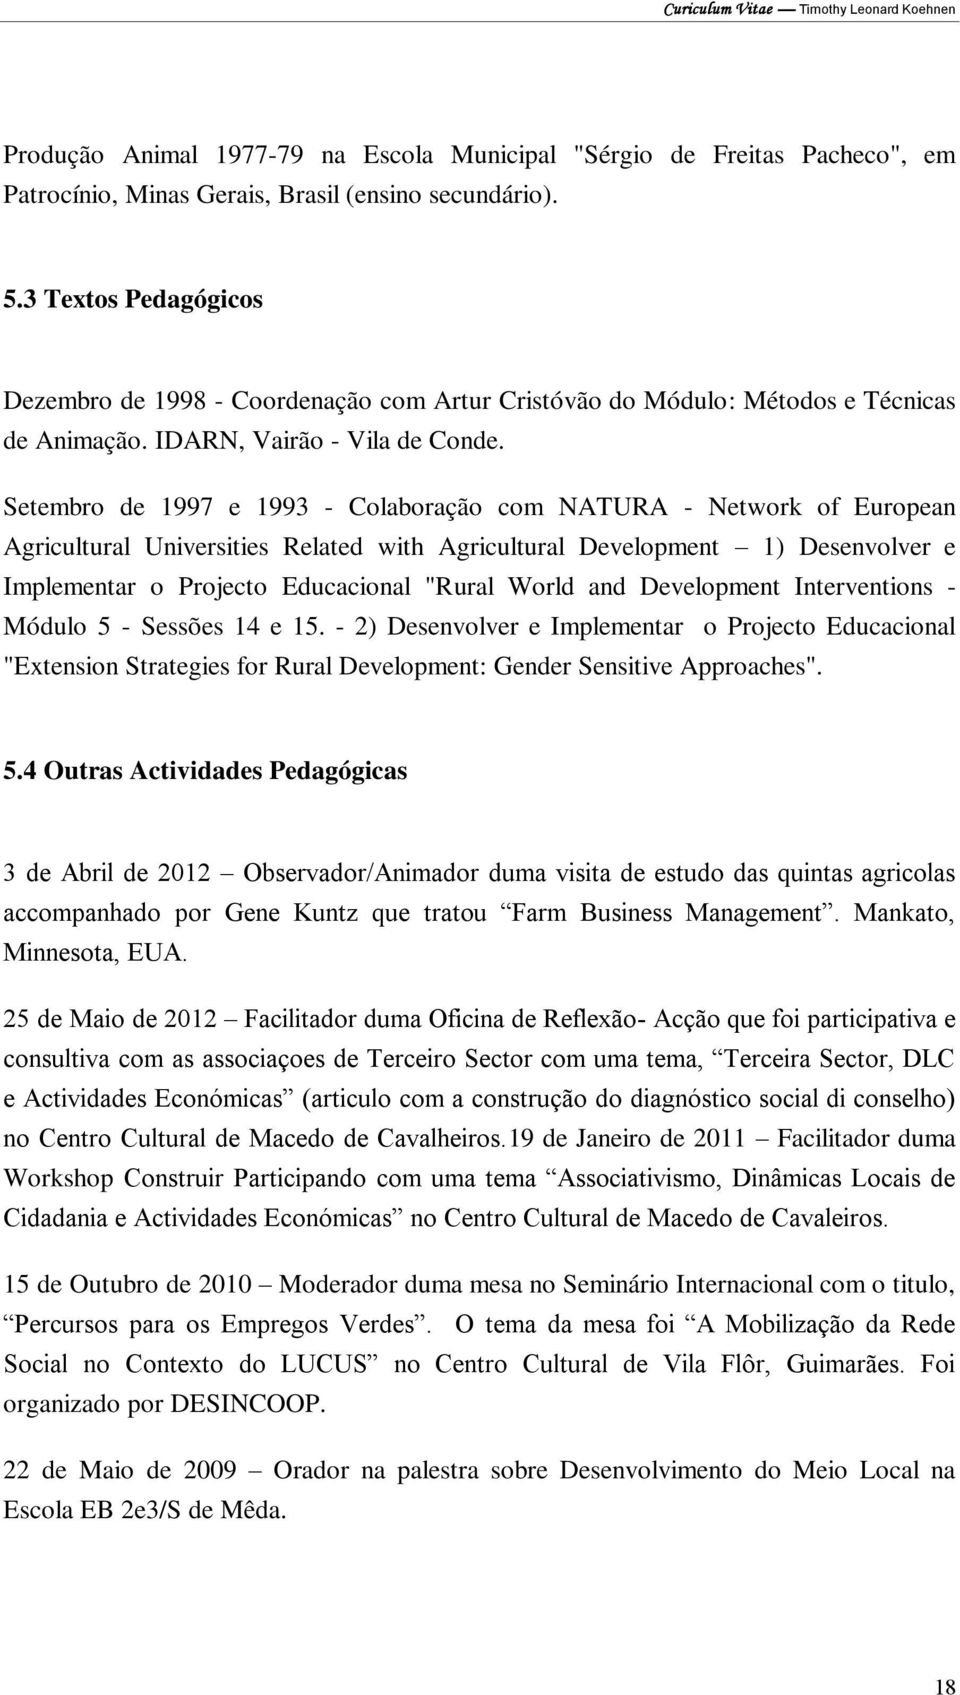 Setembro de 1997 e 1993 - Colaboração com NATURA - Network of European Agricultural Universities Related with Agricultural Development 1) Desenvolver e Implementar o Projecto Educacional "Rural World